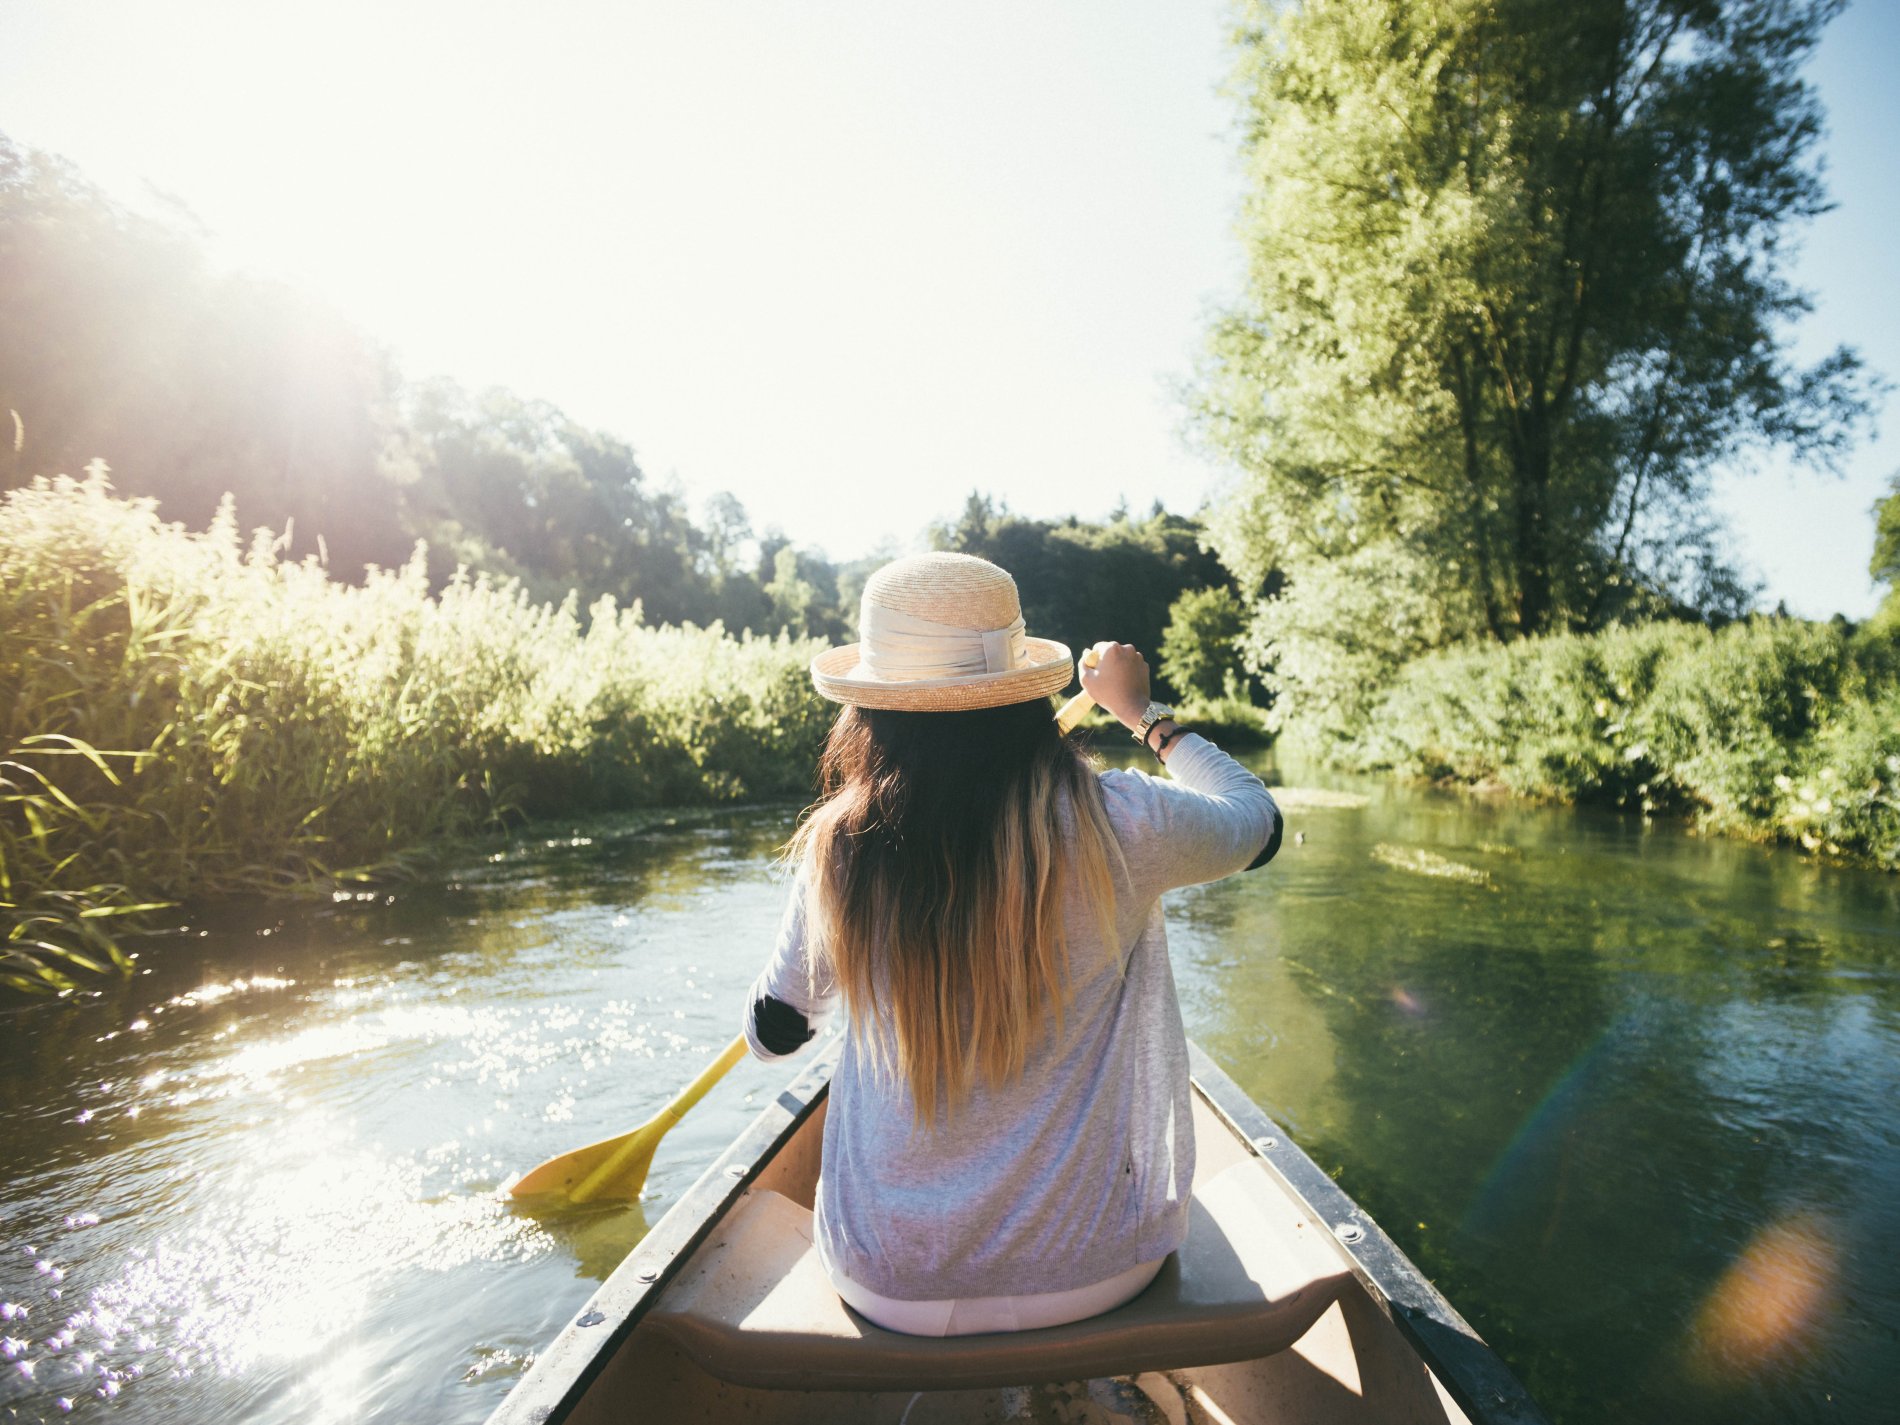 Eine Frau sitzt in einem Kanu und paddelt entlang einem Fluss. Vom Ufer ragen Pflanzen über den Fluss. Sie trägt einen Sonnenhut.